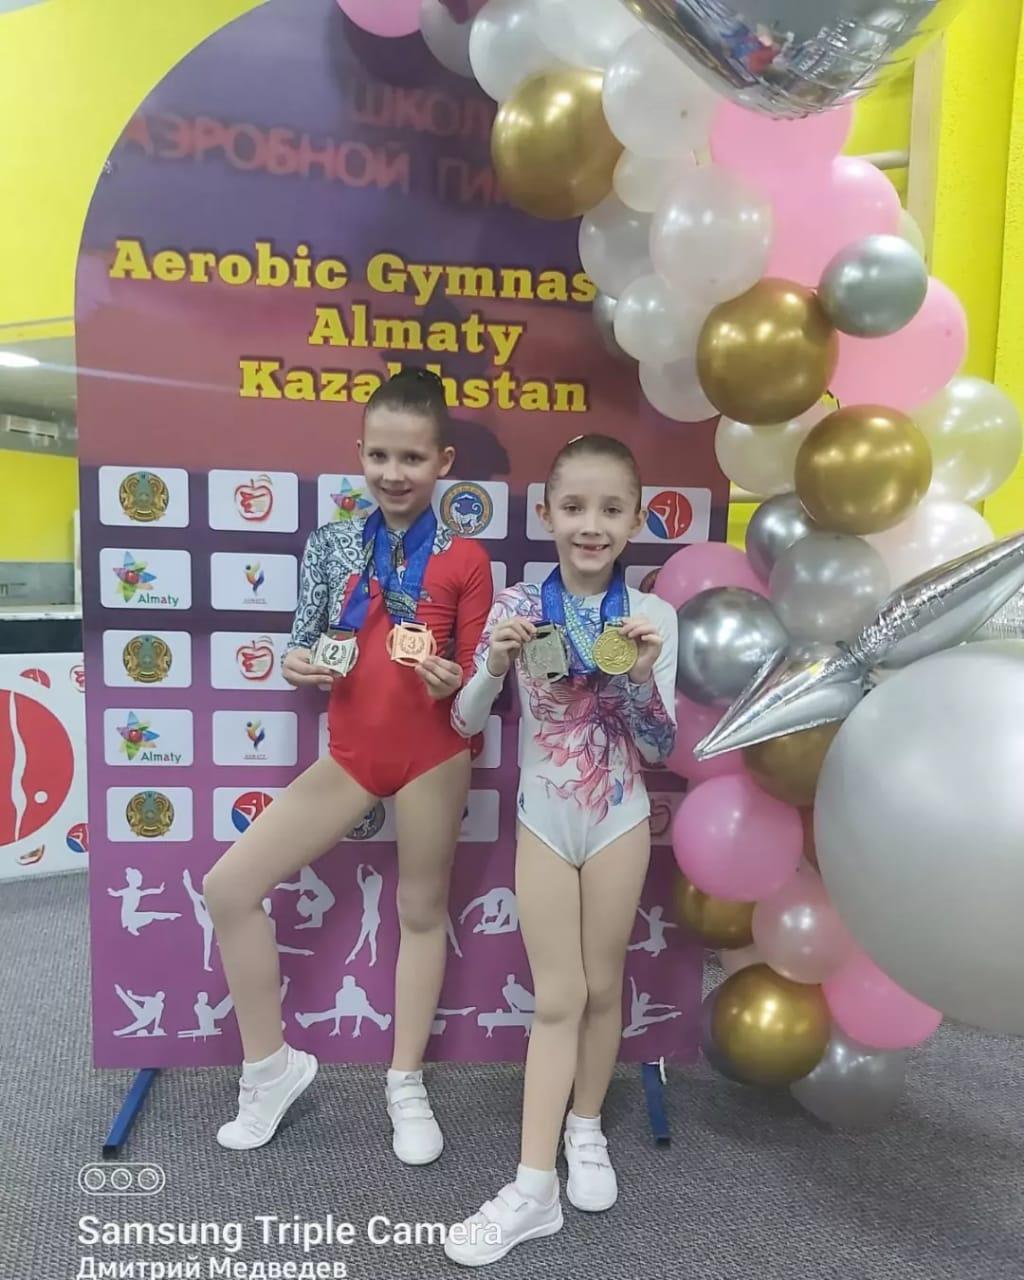 16 сәуір күні Аэробтық гимнастика бойынша Алматы қаласында  чемпионат өткізілді. Мектебіміздің 1 "б" сынып оқушысы Медведева Алиса 6-8 жас аралығында